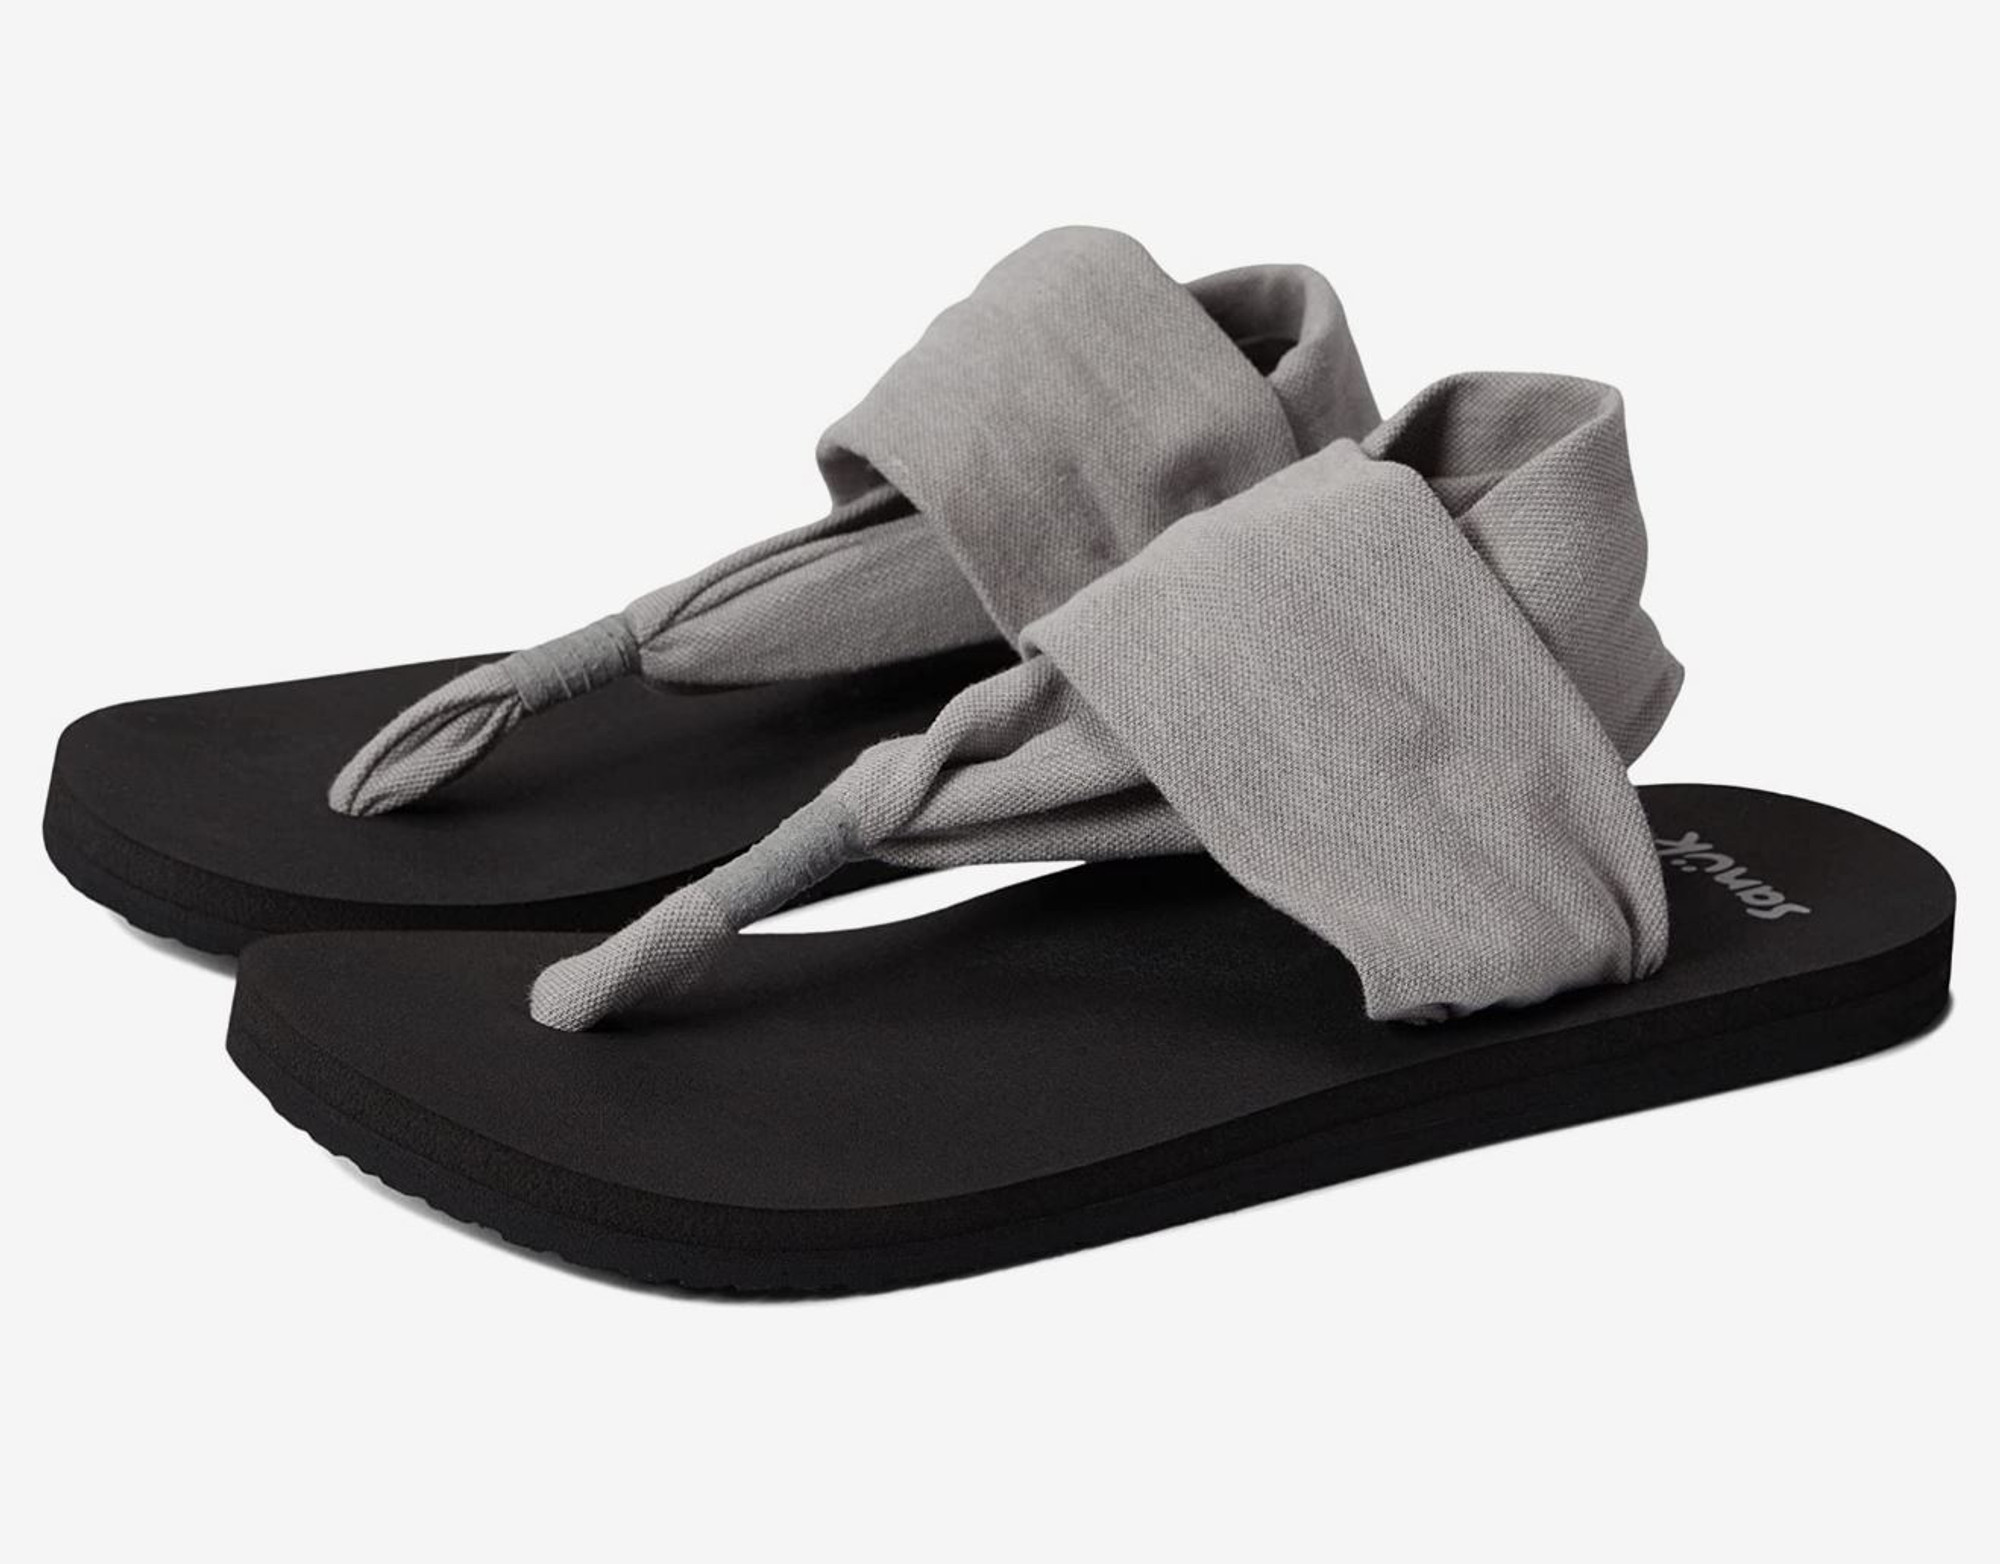 Sanuk Women's Yoga Sling 3 Knit Sandal, Black, 5 